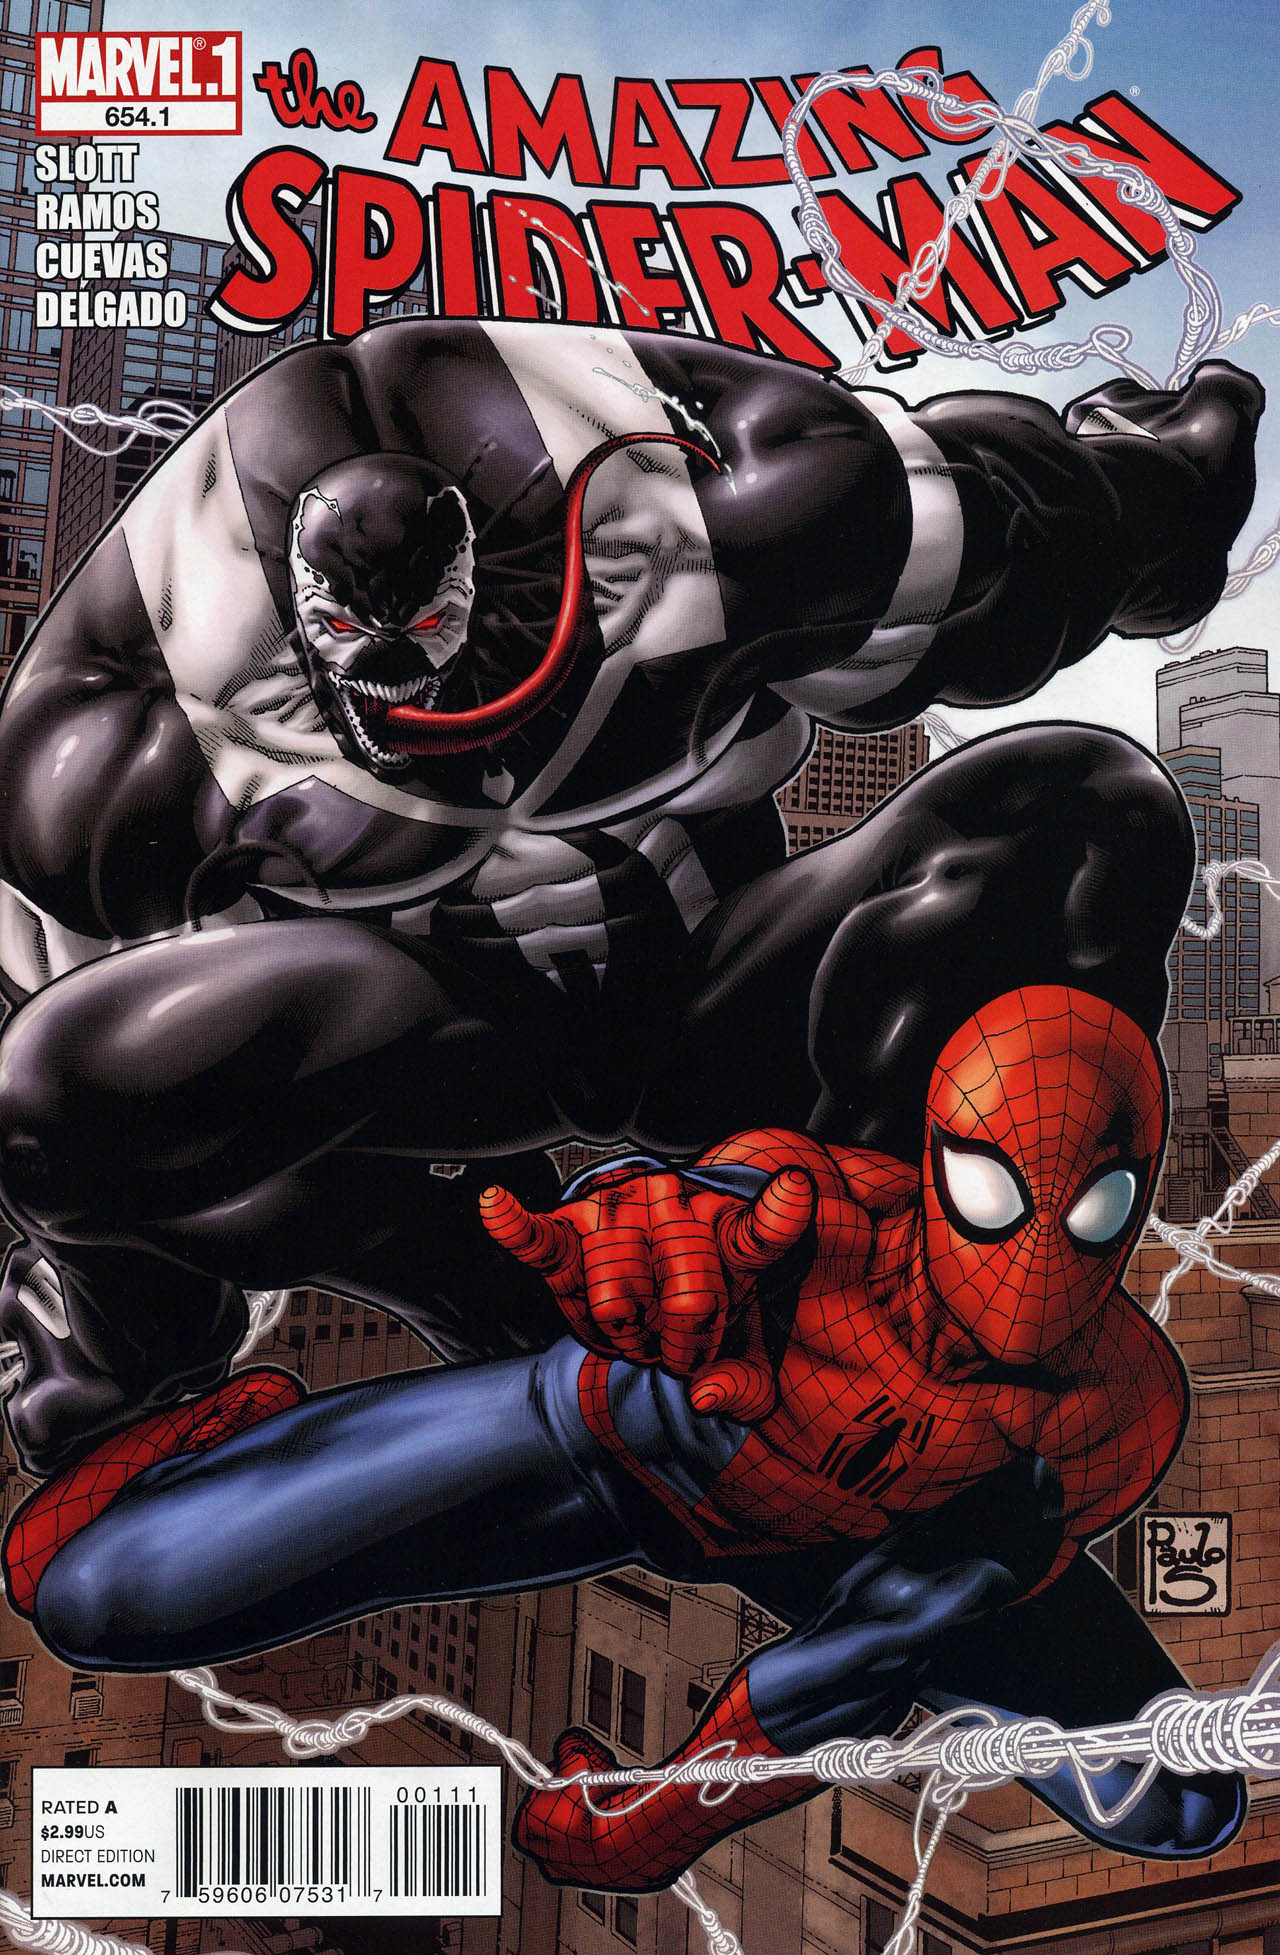 Amazing Spider-Man #654.1 